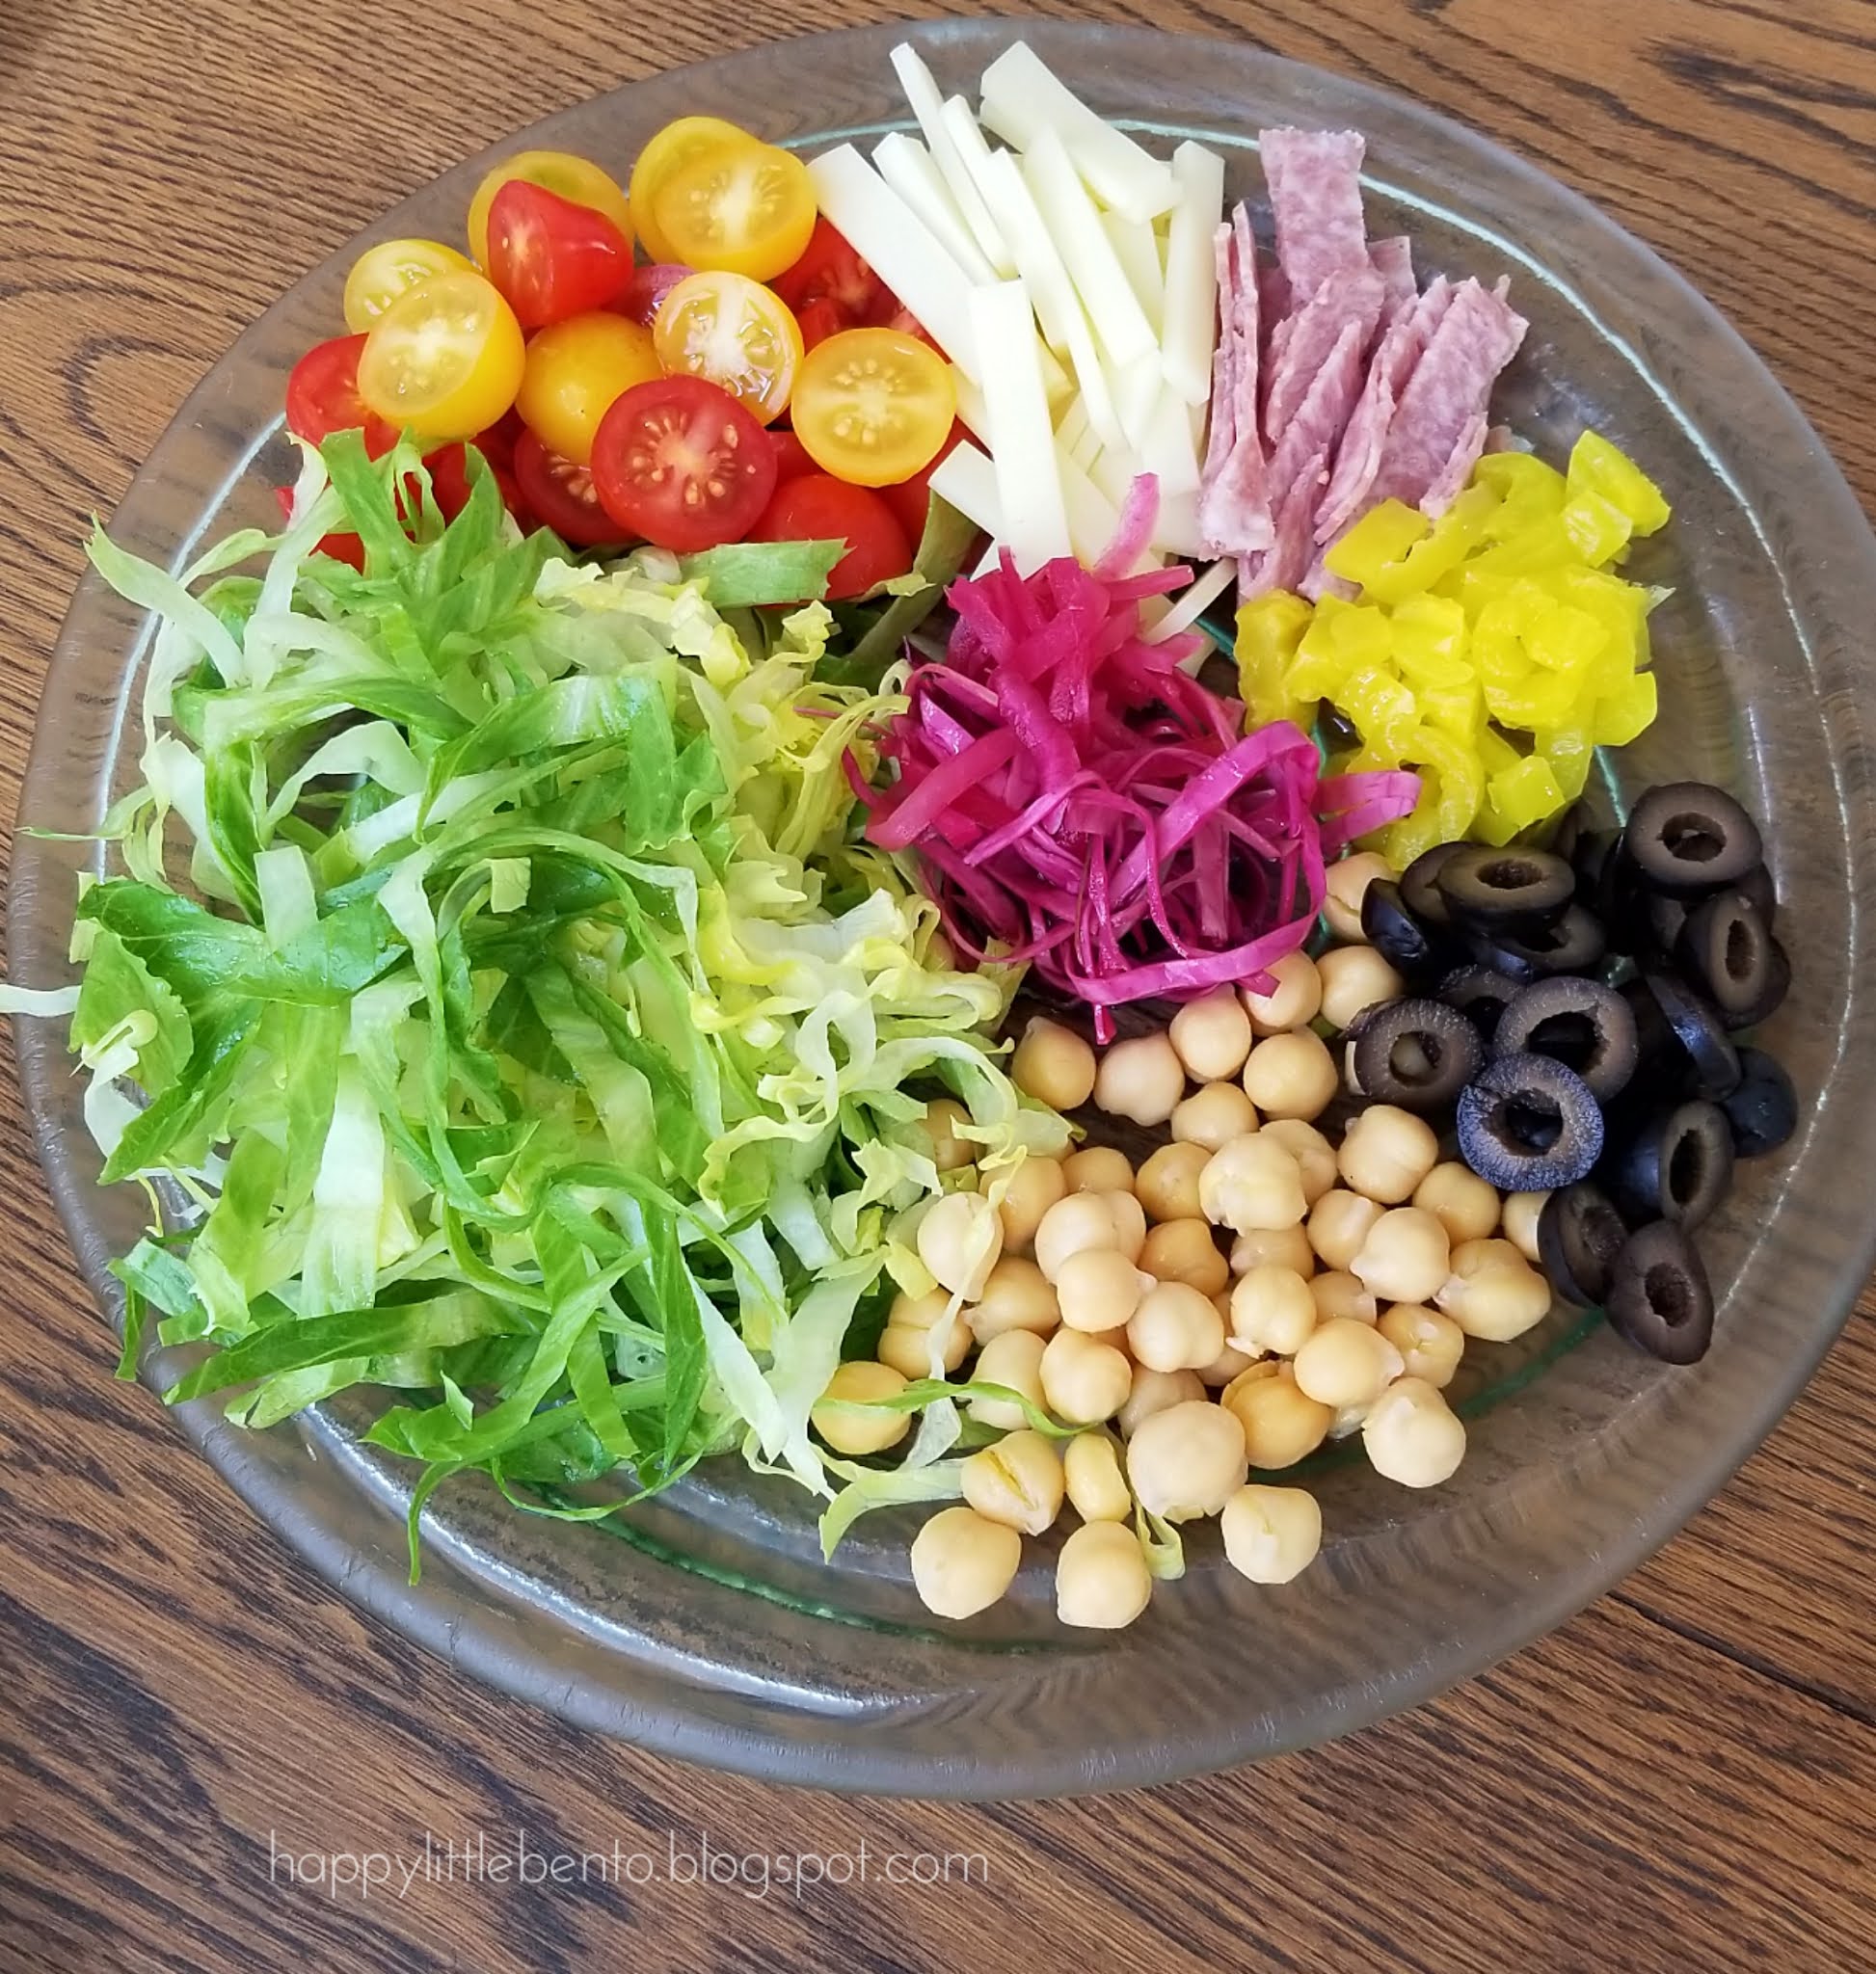 Happy Little Salad Bento!